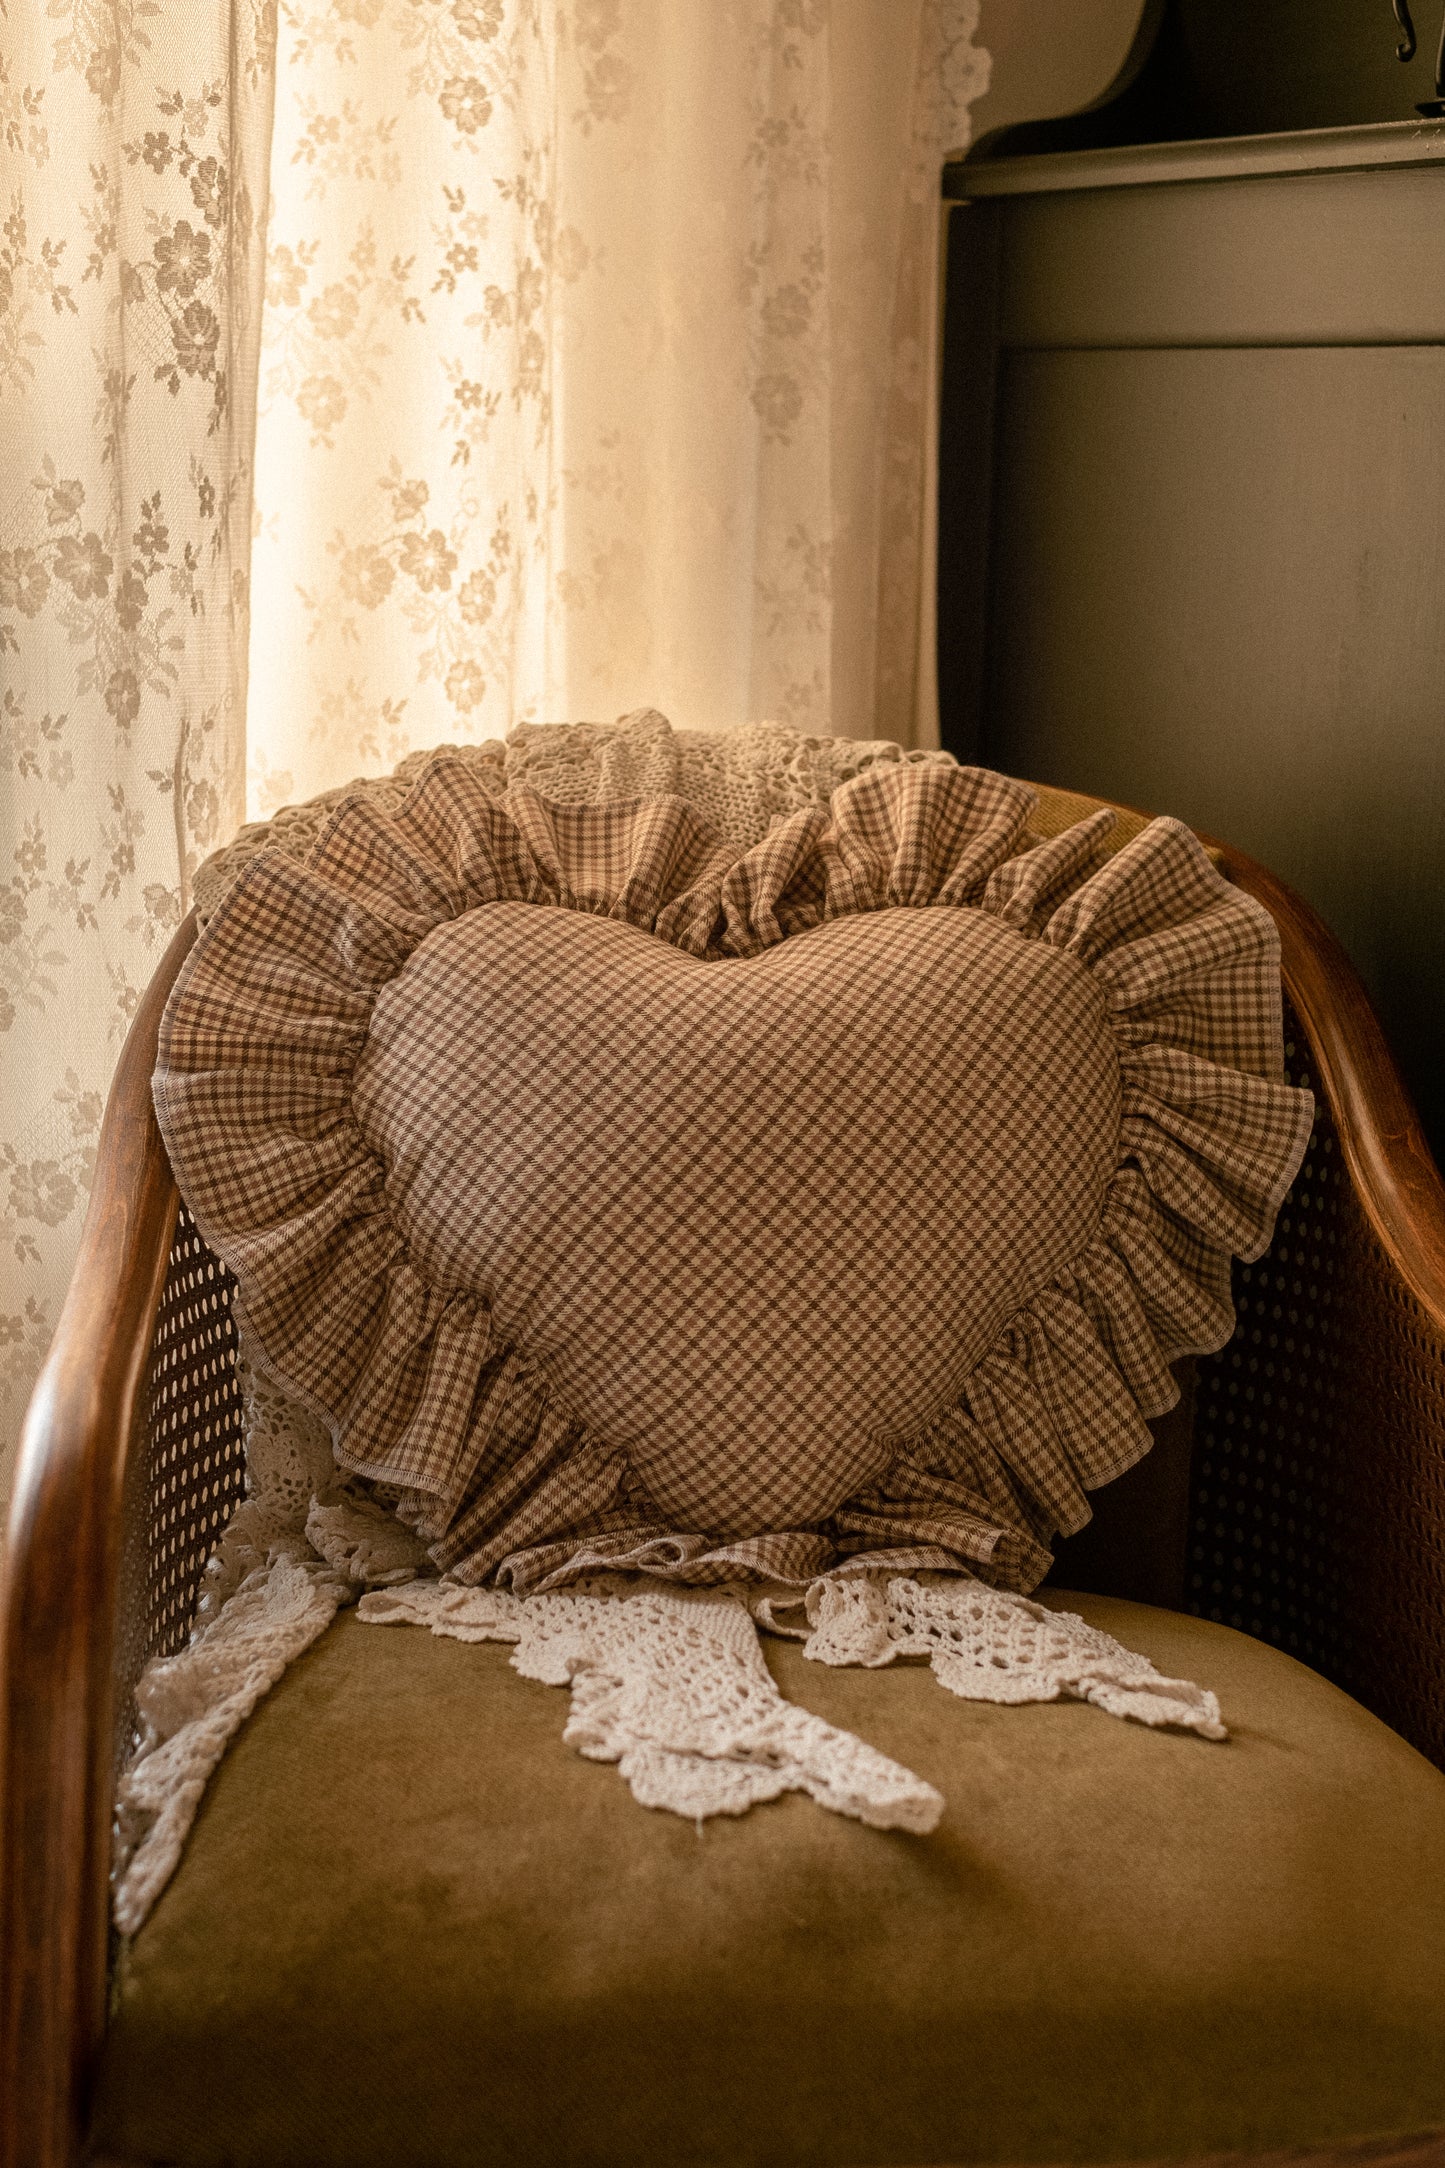 Handmade ruffled heart pillow - Fall picnic